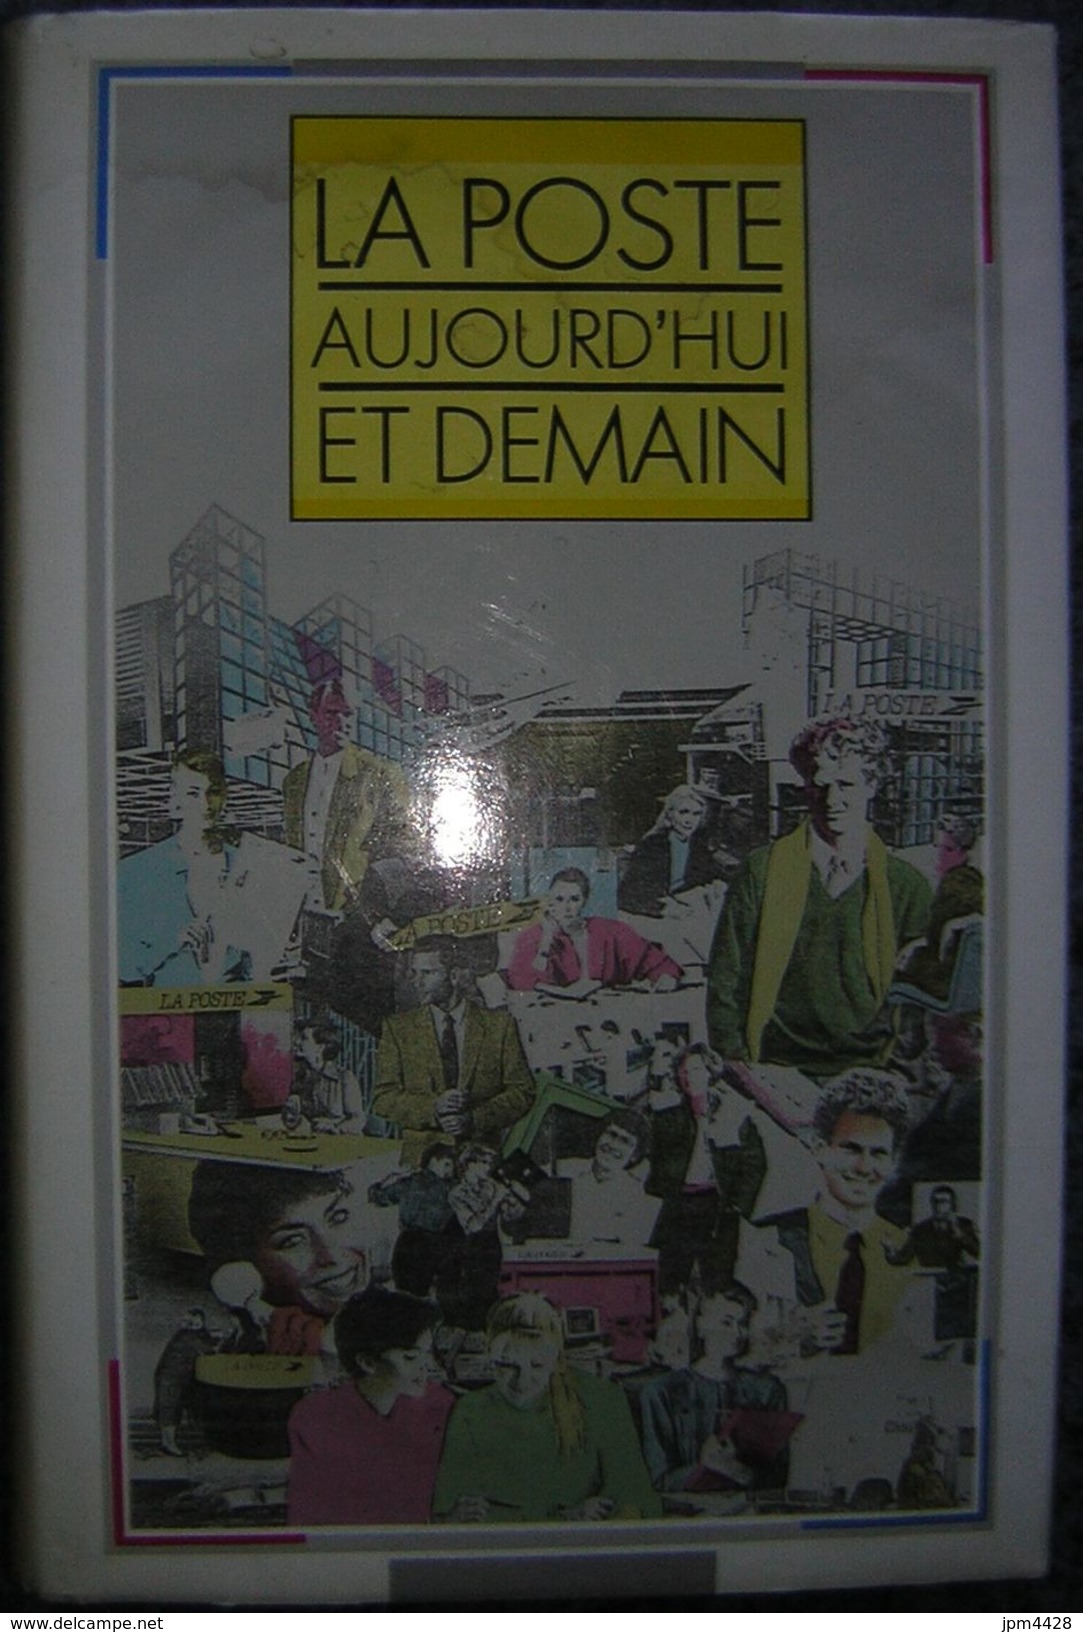 La Poste Aujouird'hui Et Demain Livre De 1989, 222 Pages - Ministére Des Postes, Des Télécomminications Et De L'espace - Handbooks